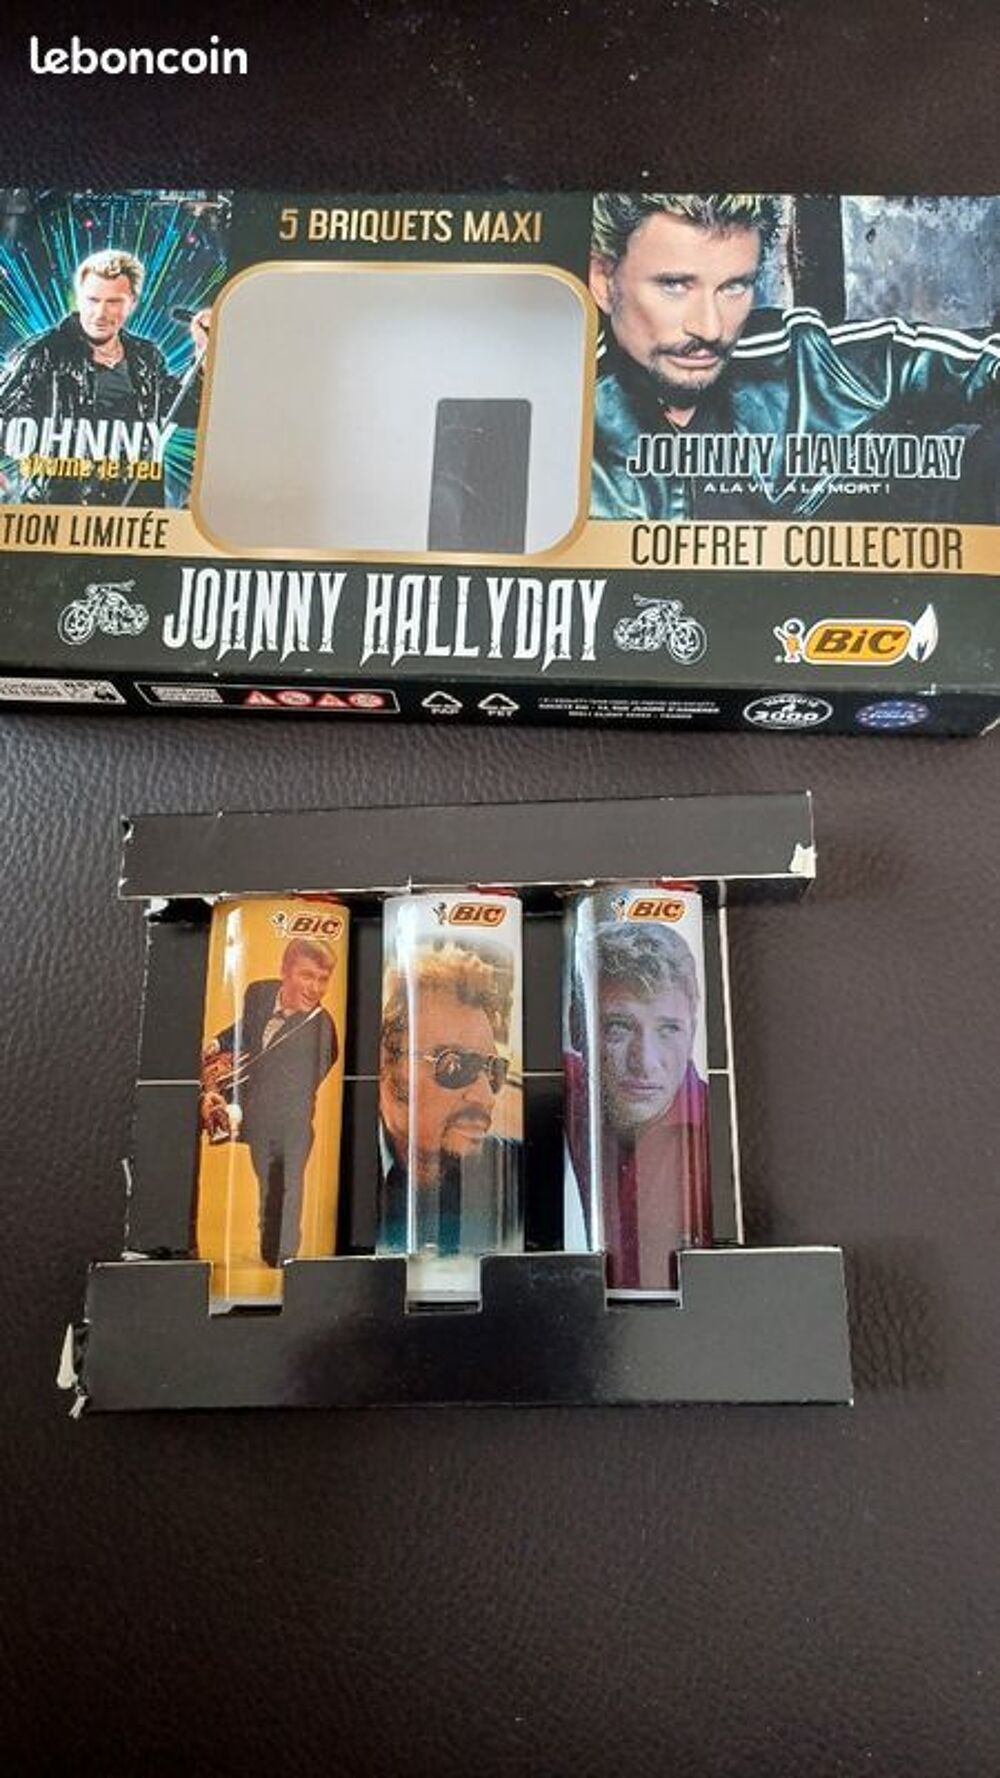 
3 briquets Bic neuf Johnny Hallyday neuf 